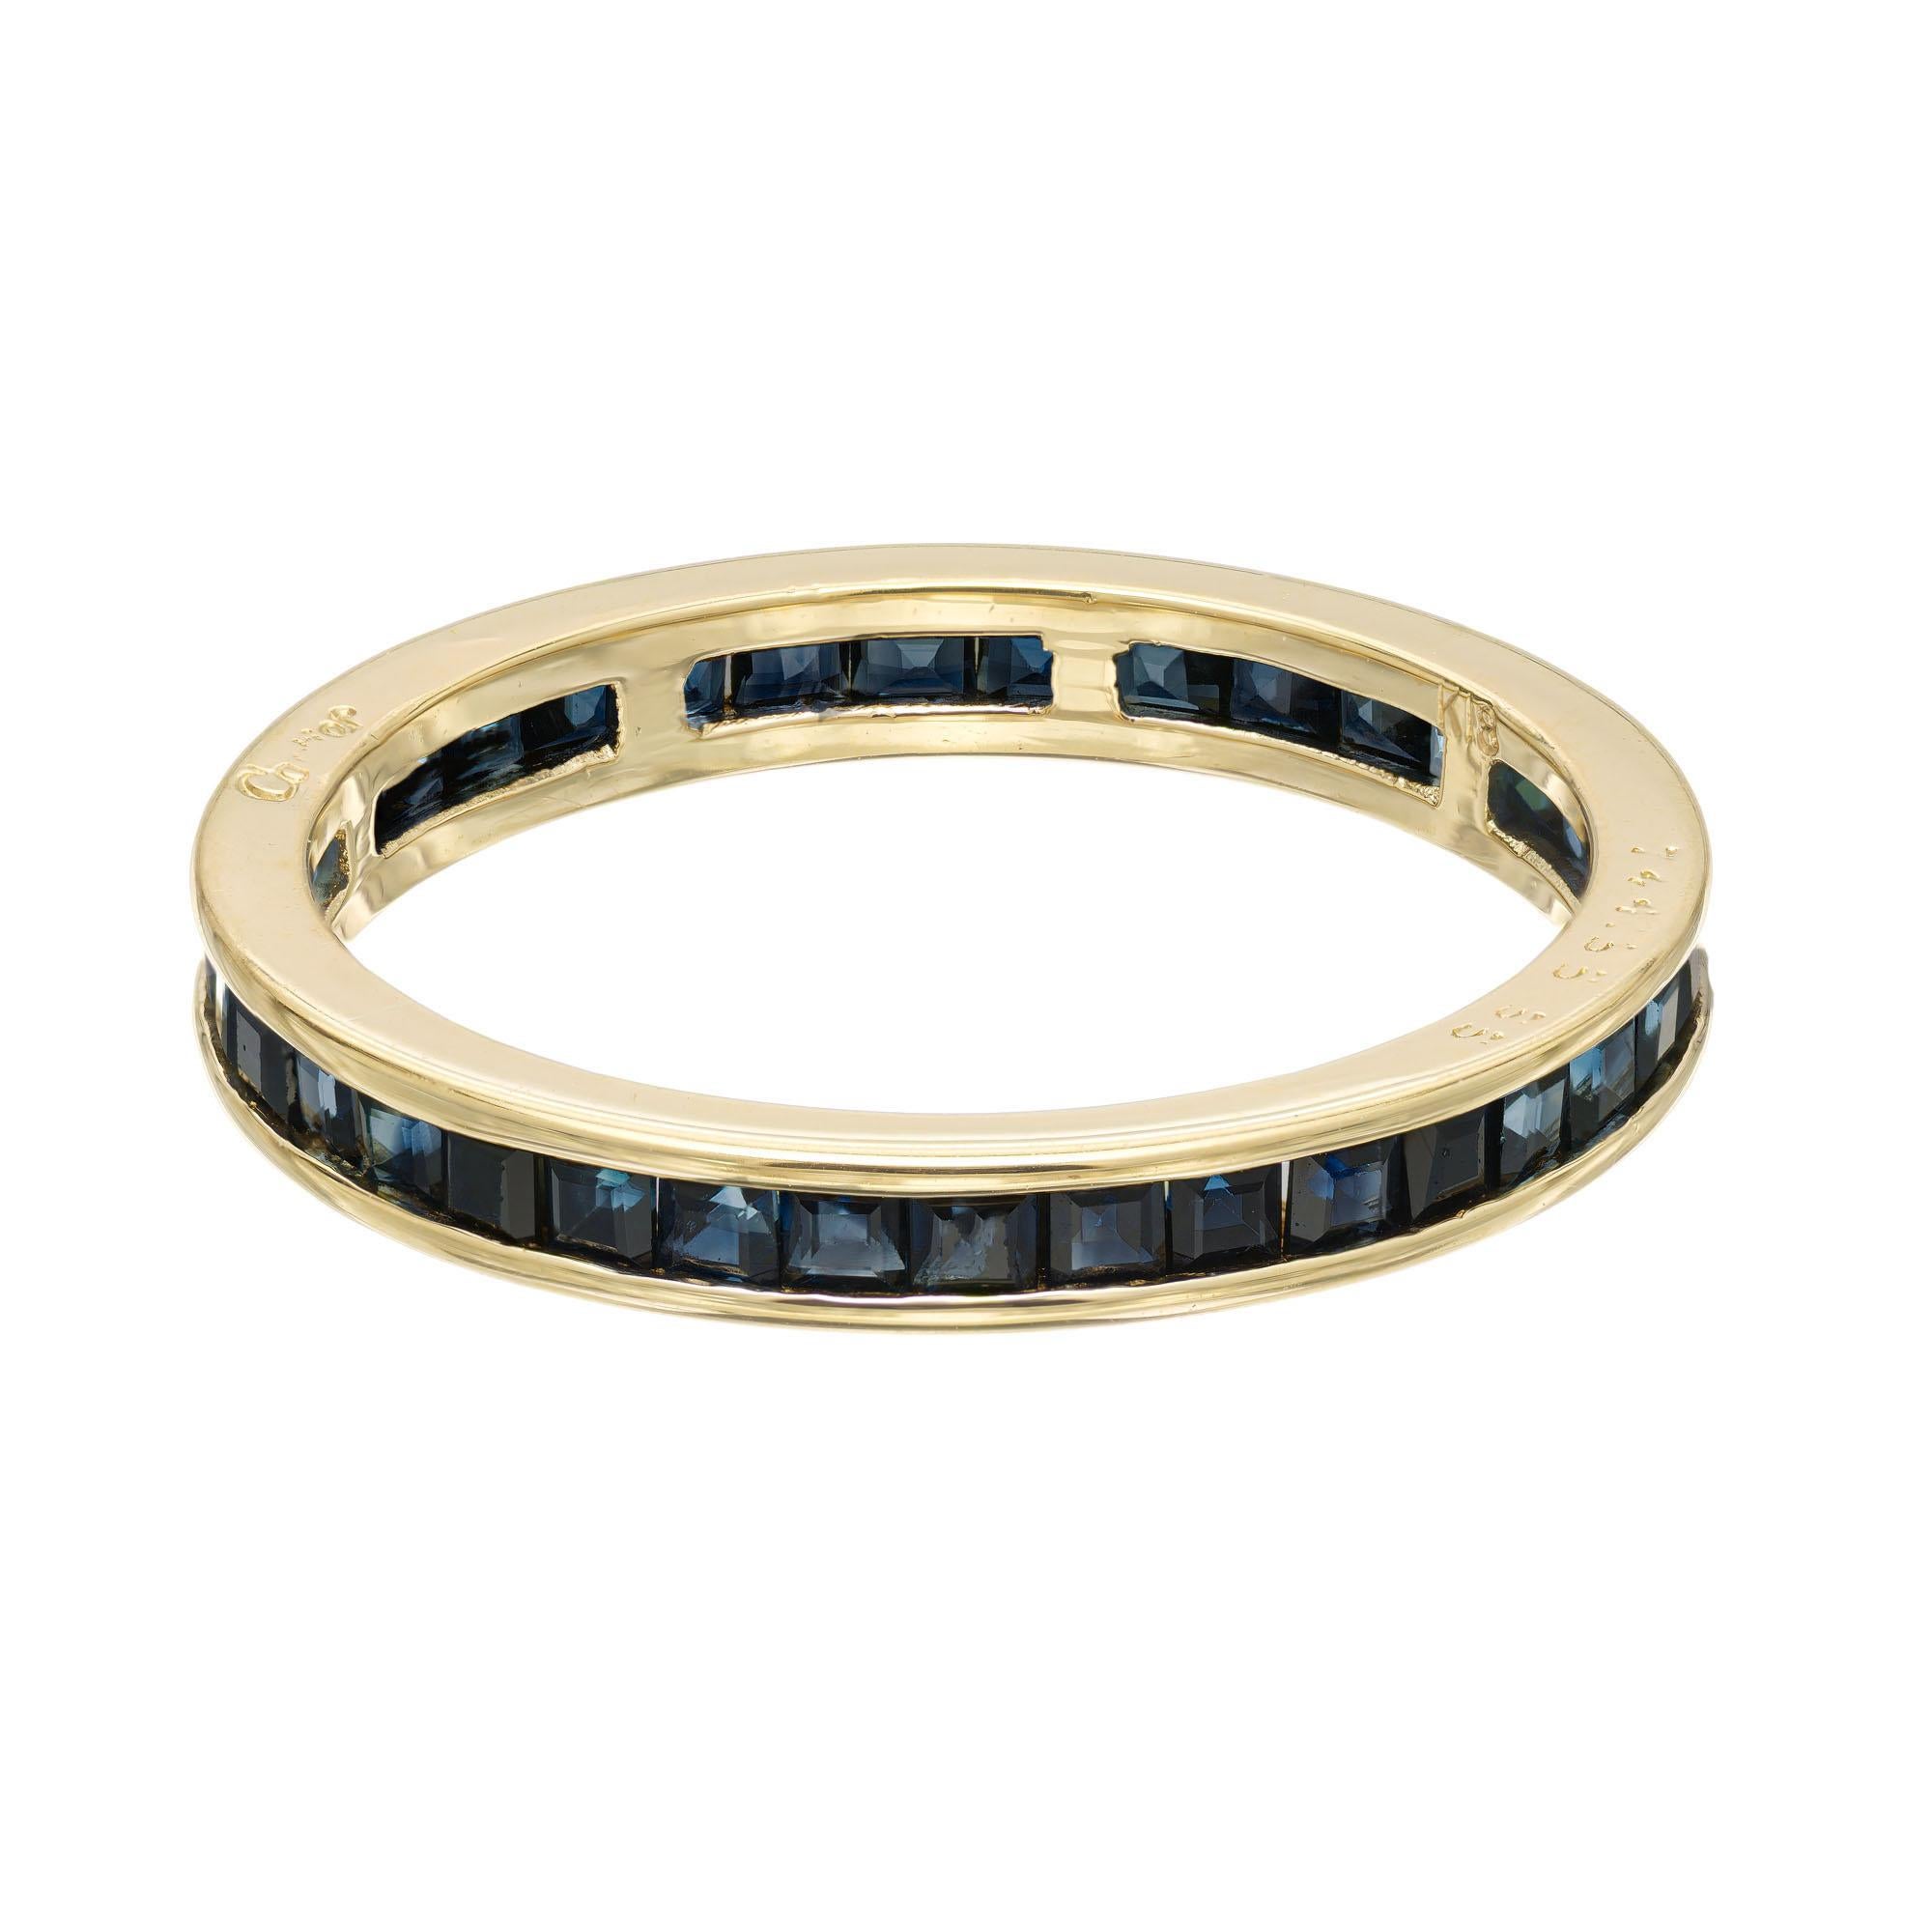 Cartier Saphir Ehering Ring. 36 quadratische Saphire in einer Fassung aus 18k Gelbgold für die Ewigkeit. 

36 quadratisch geschliffene Saphire mit einem Gesamtgewicht von ca. 1.10cts.
Größe: 6,75
18k Gelbgold
Gewicht: 2,5 Gramm
Gestempelt: Cartier